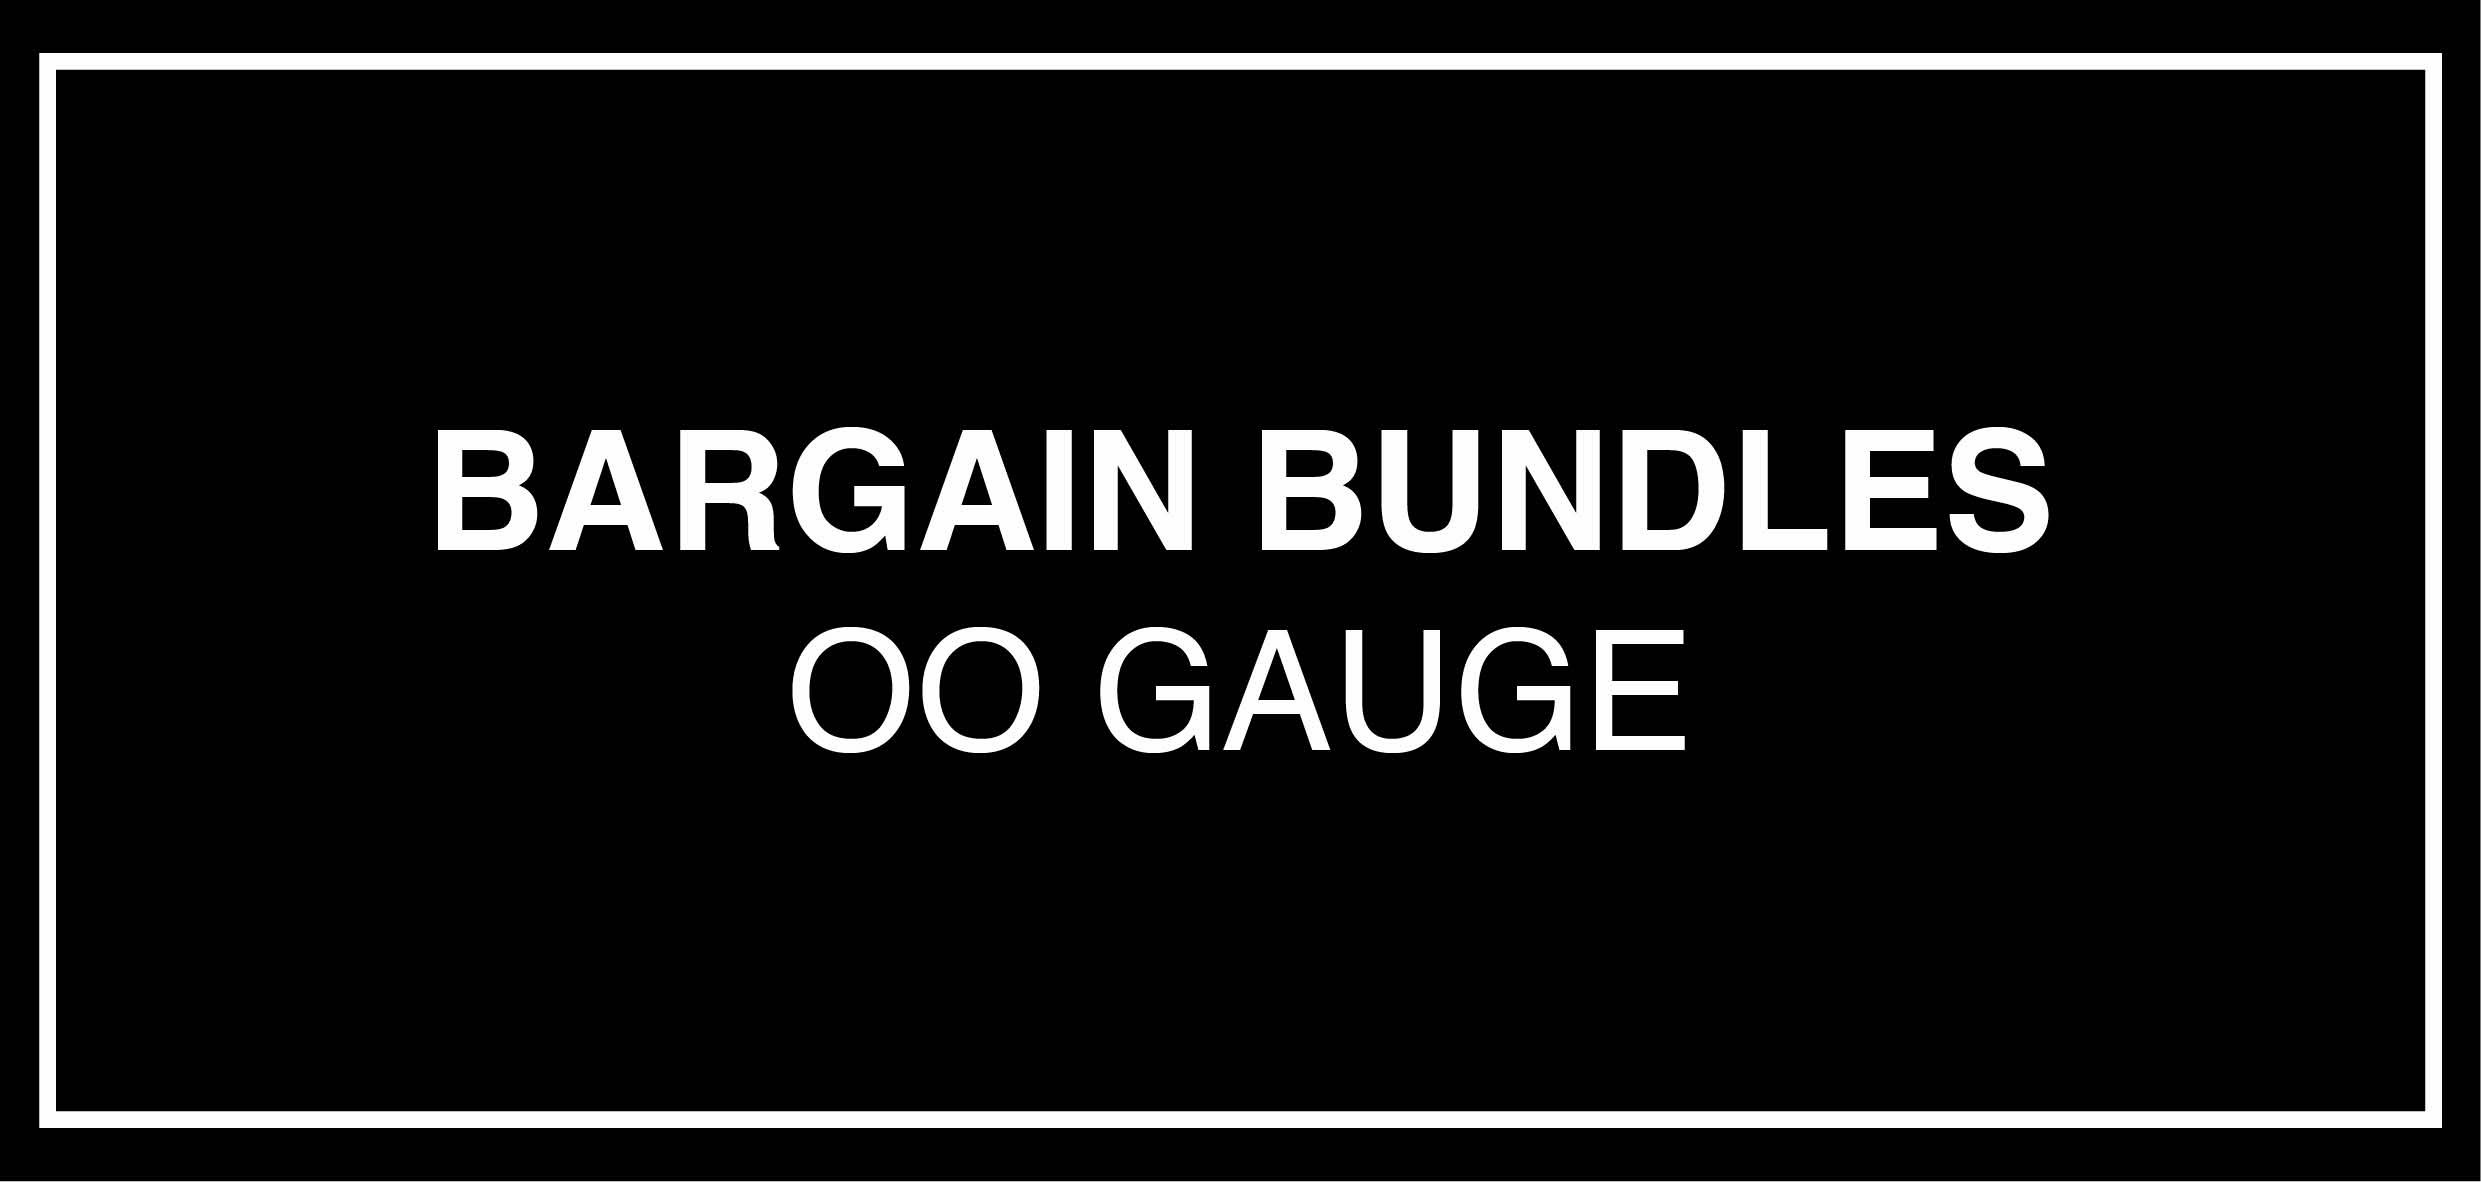 Bargain Bundles OO Gauge